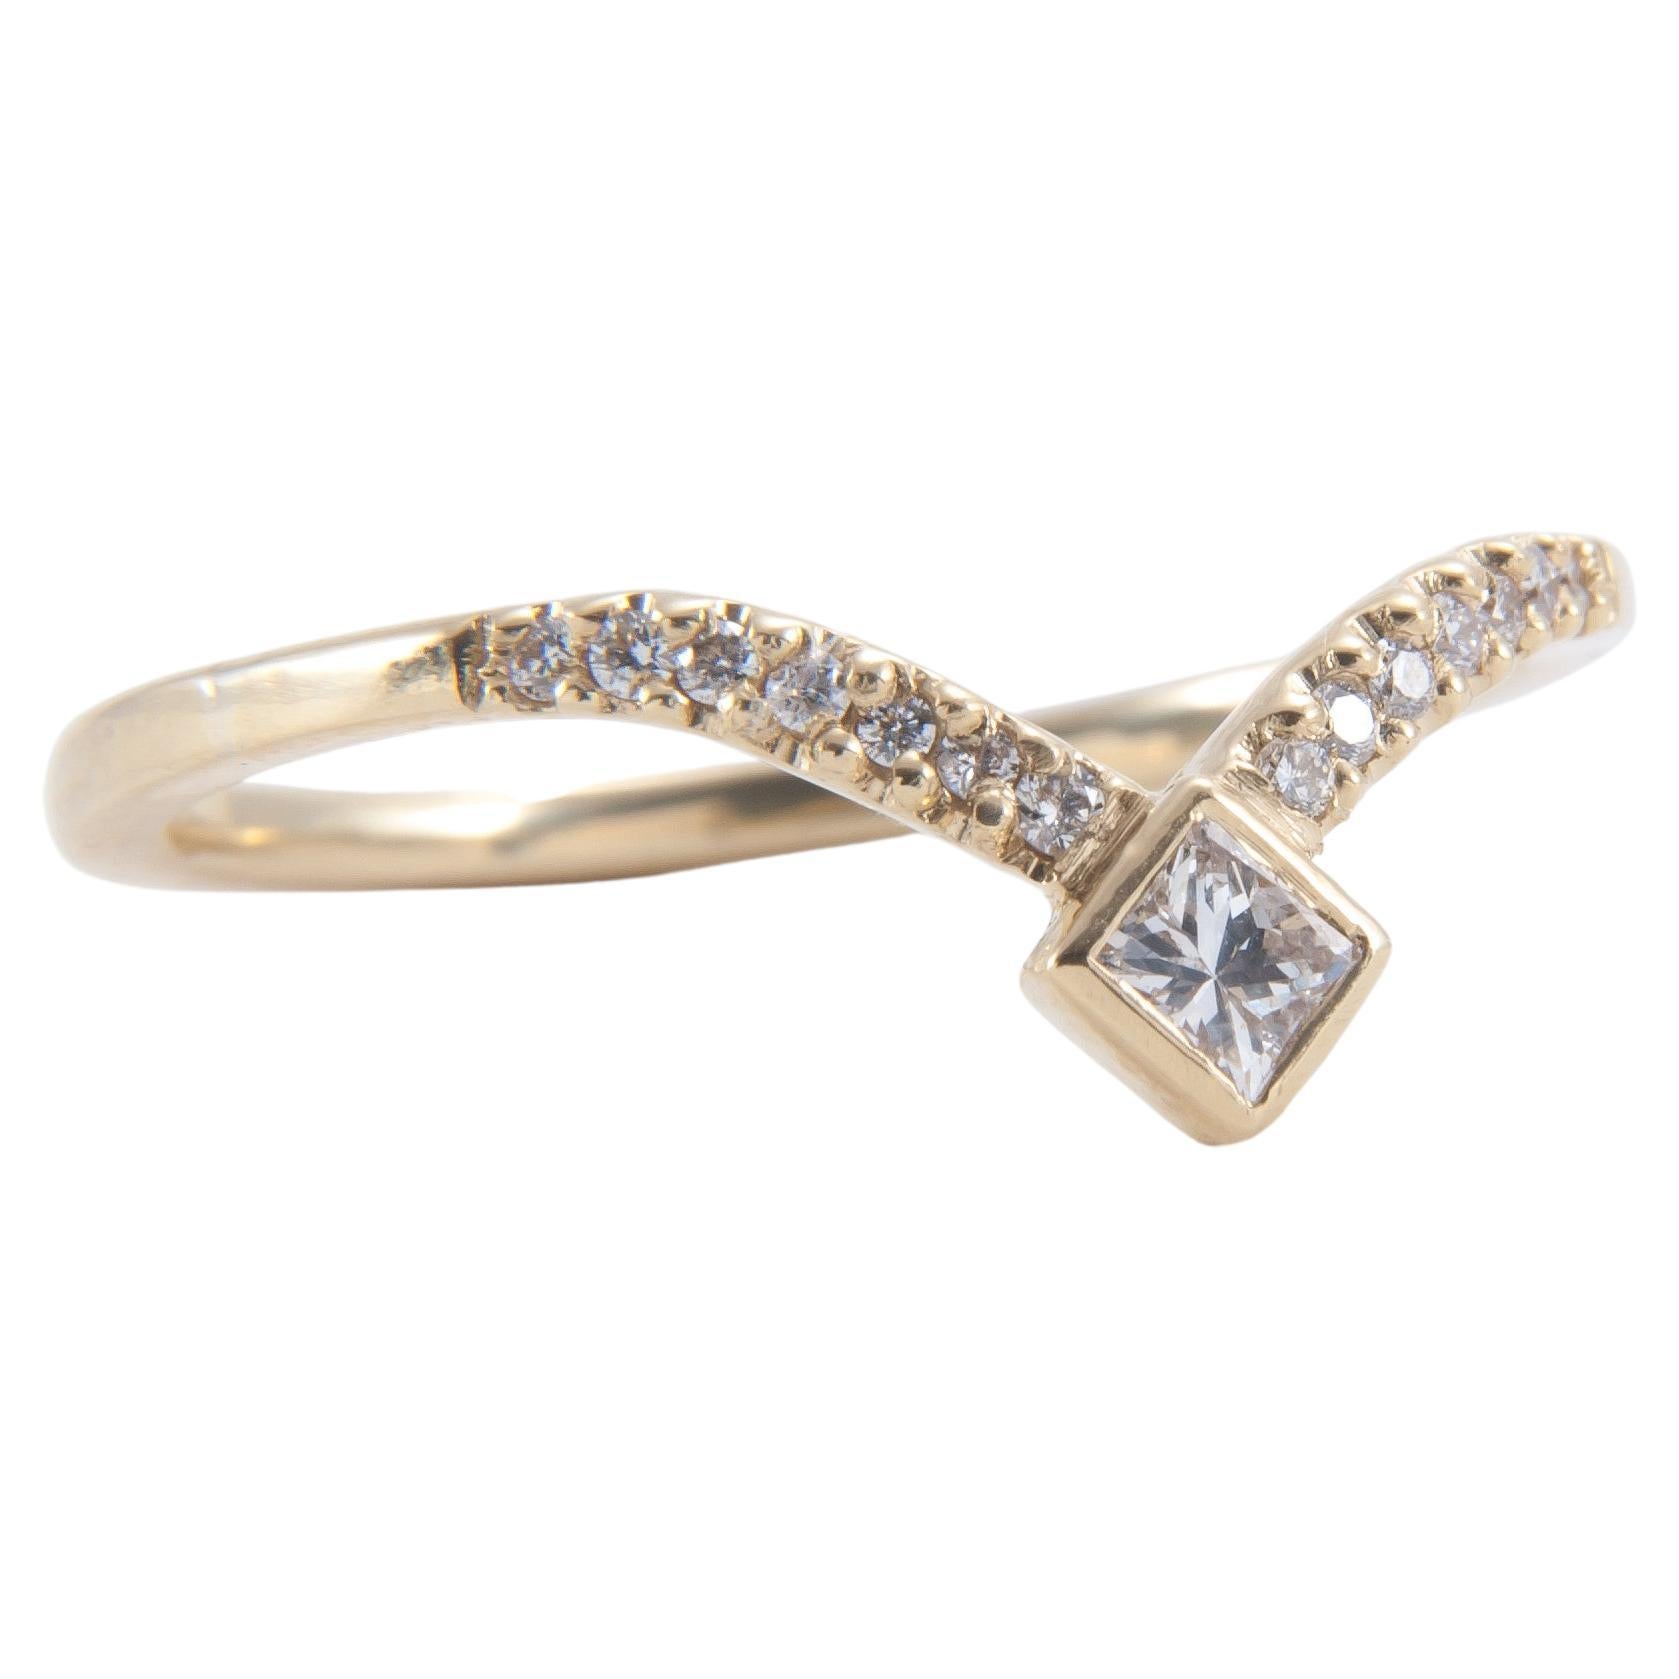 Un design géométrique frappant fait de ce bracelet en diamant une pièce unique et un complément idéal à toute collection de bagues.

Bande 18K
Diamant de taille princesse de 0,10 carat
entouré de diamants blancs totalisant 0,07ct